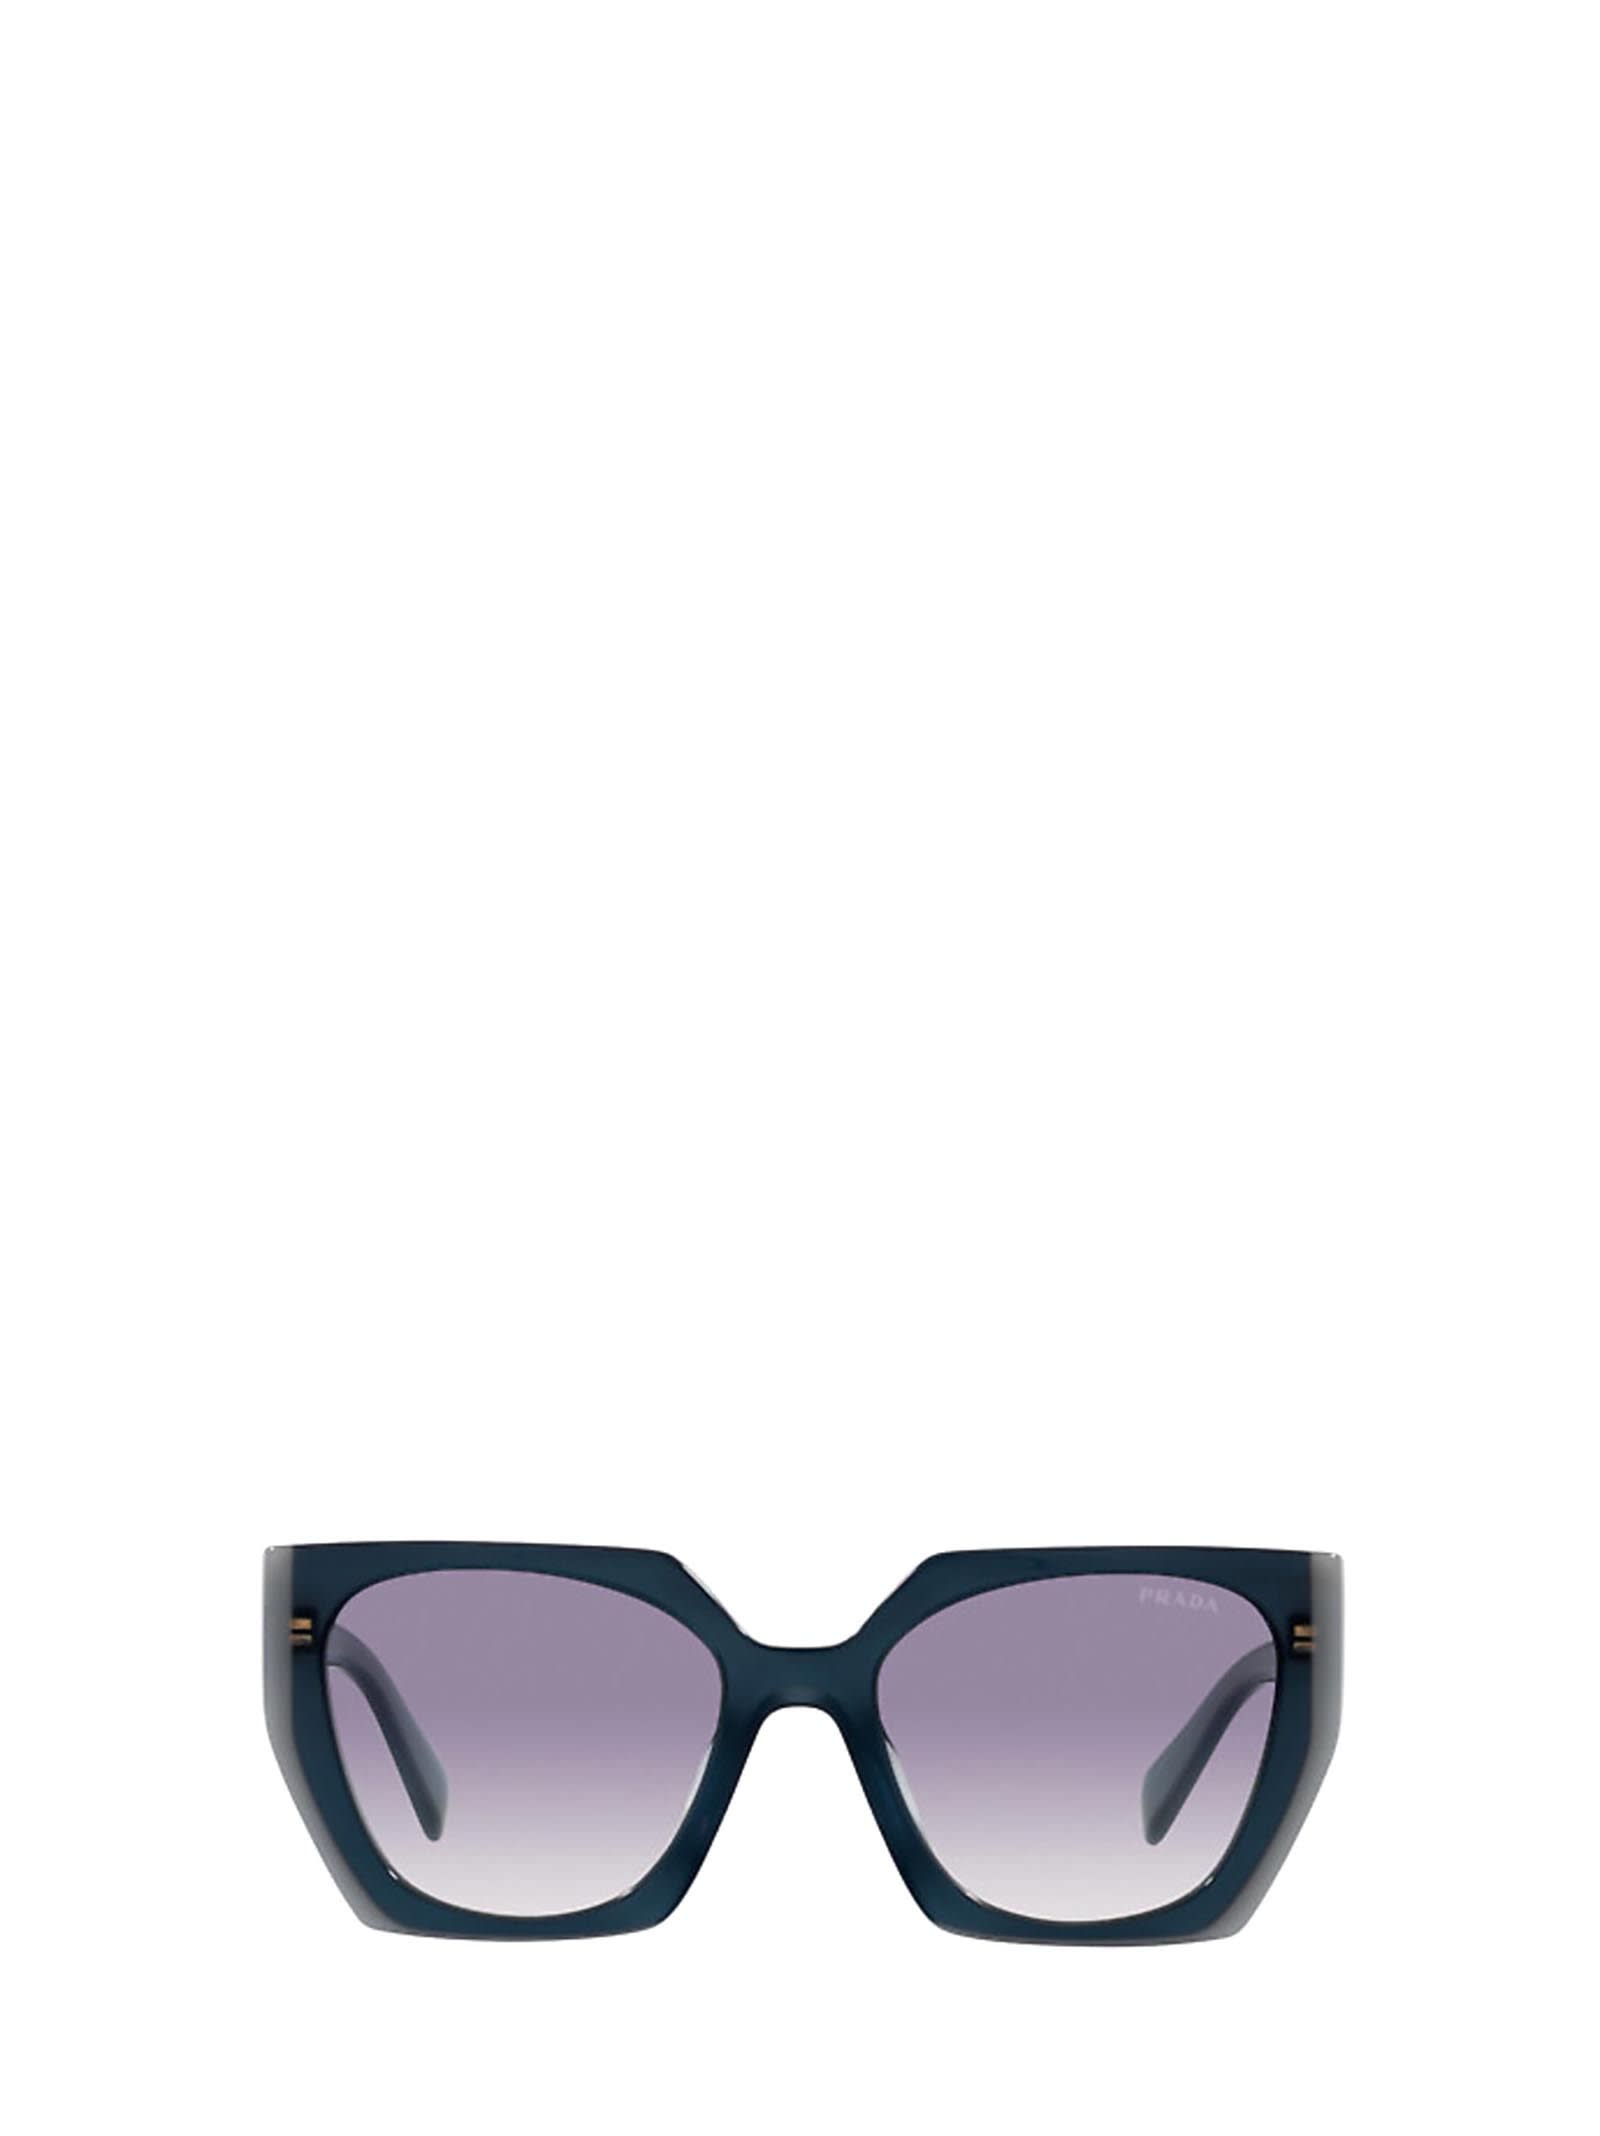 Prada Prada Pr 15ws Opal Astral Sunglasses